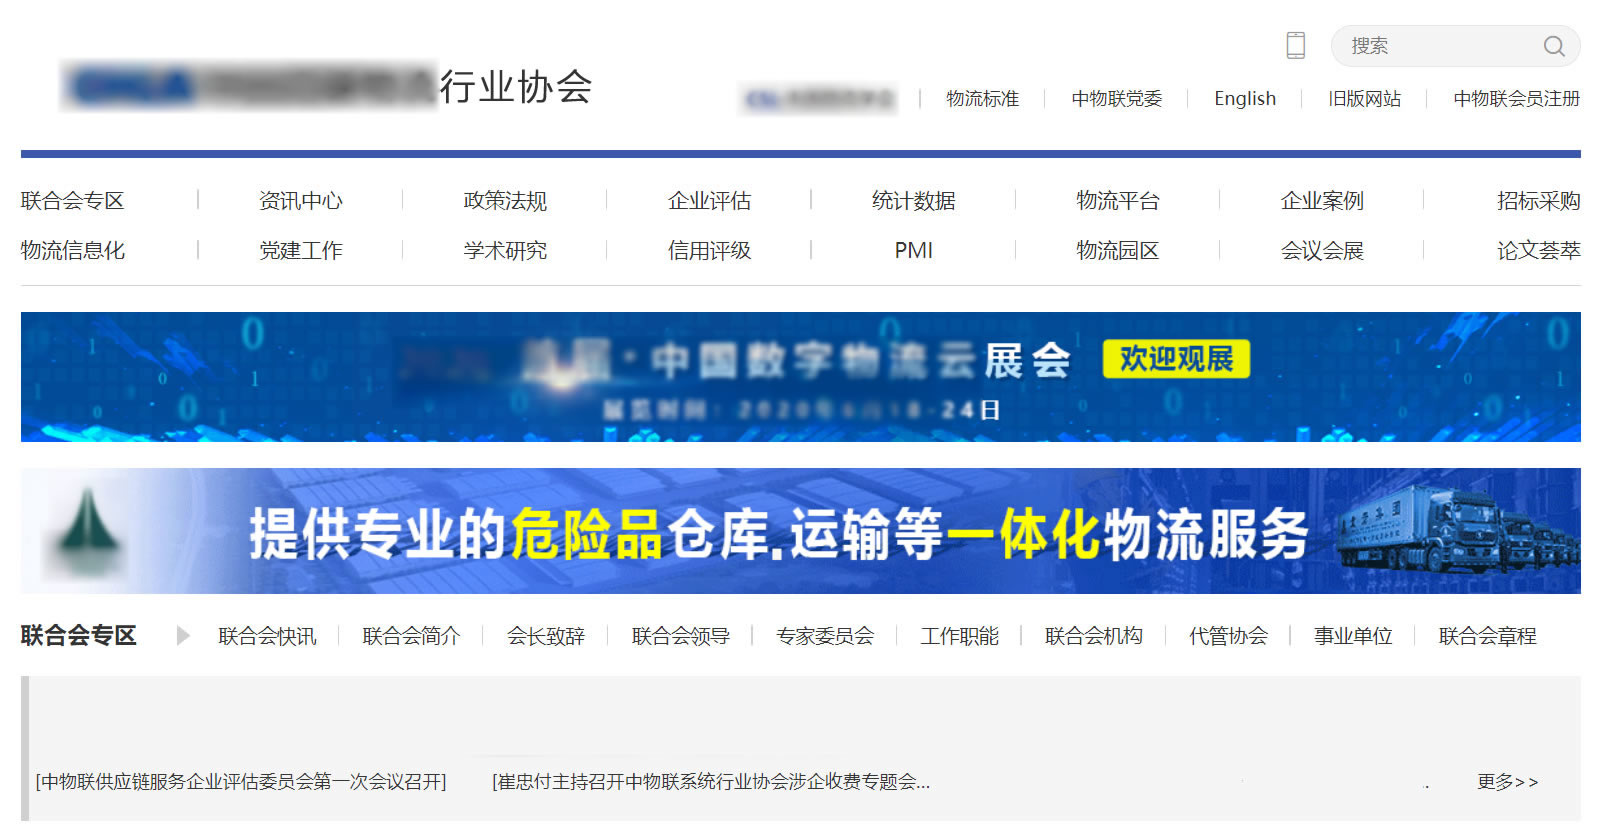 某协会网站：中英双语定制化设计(图1)